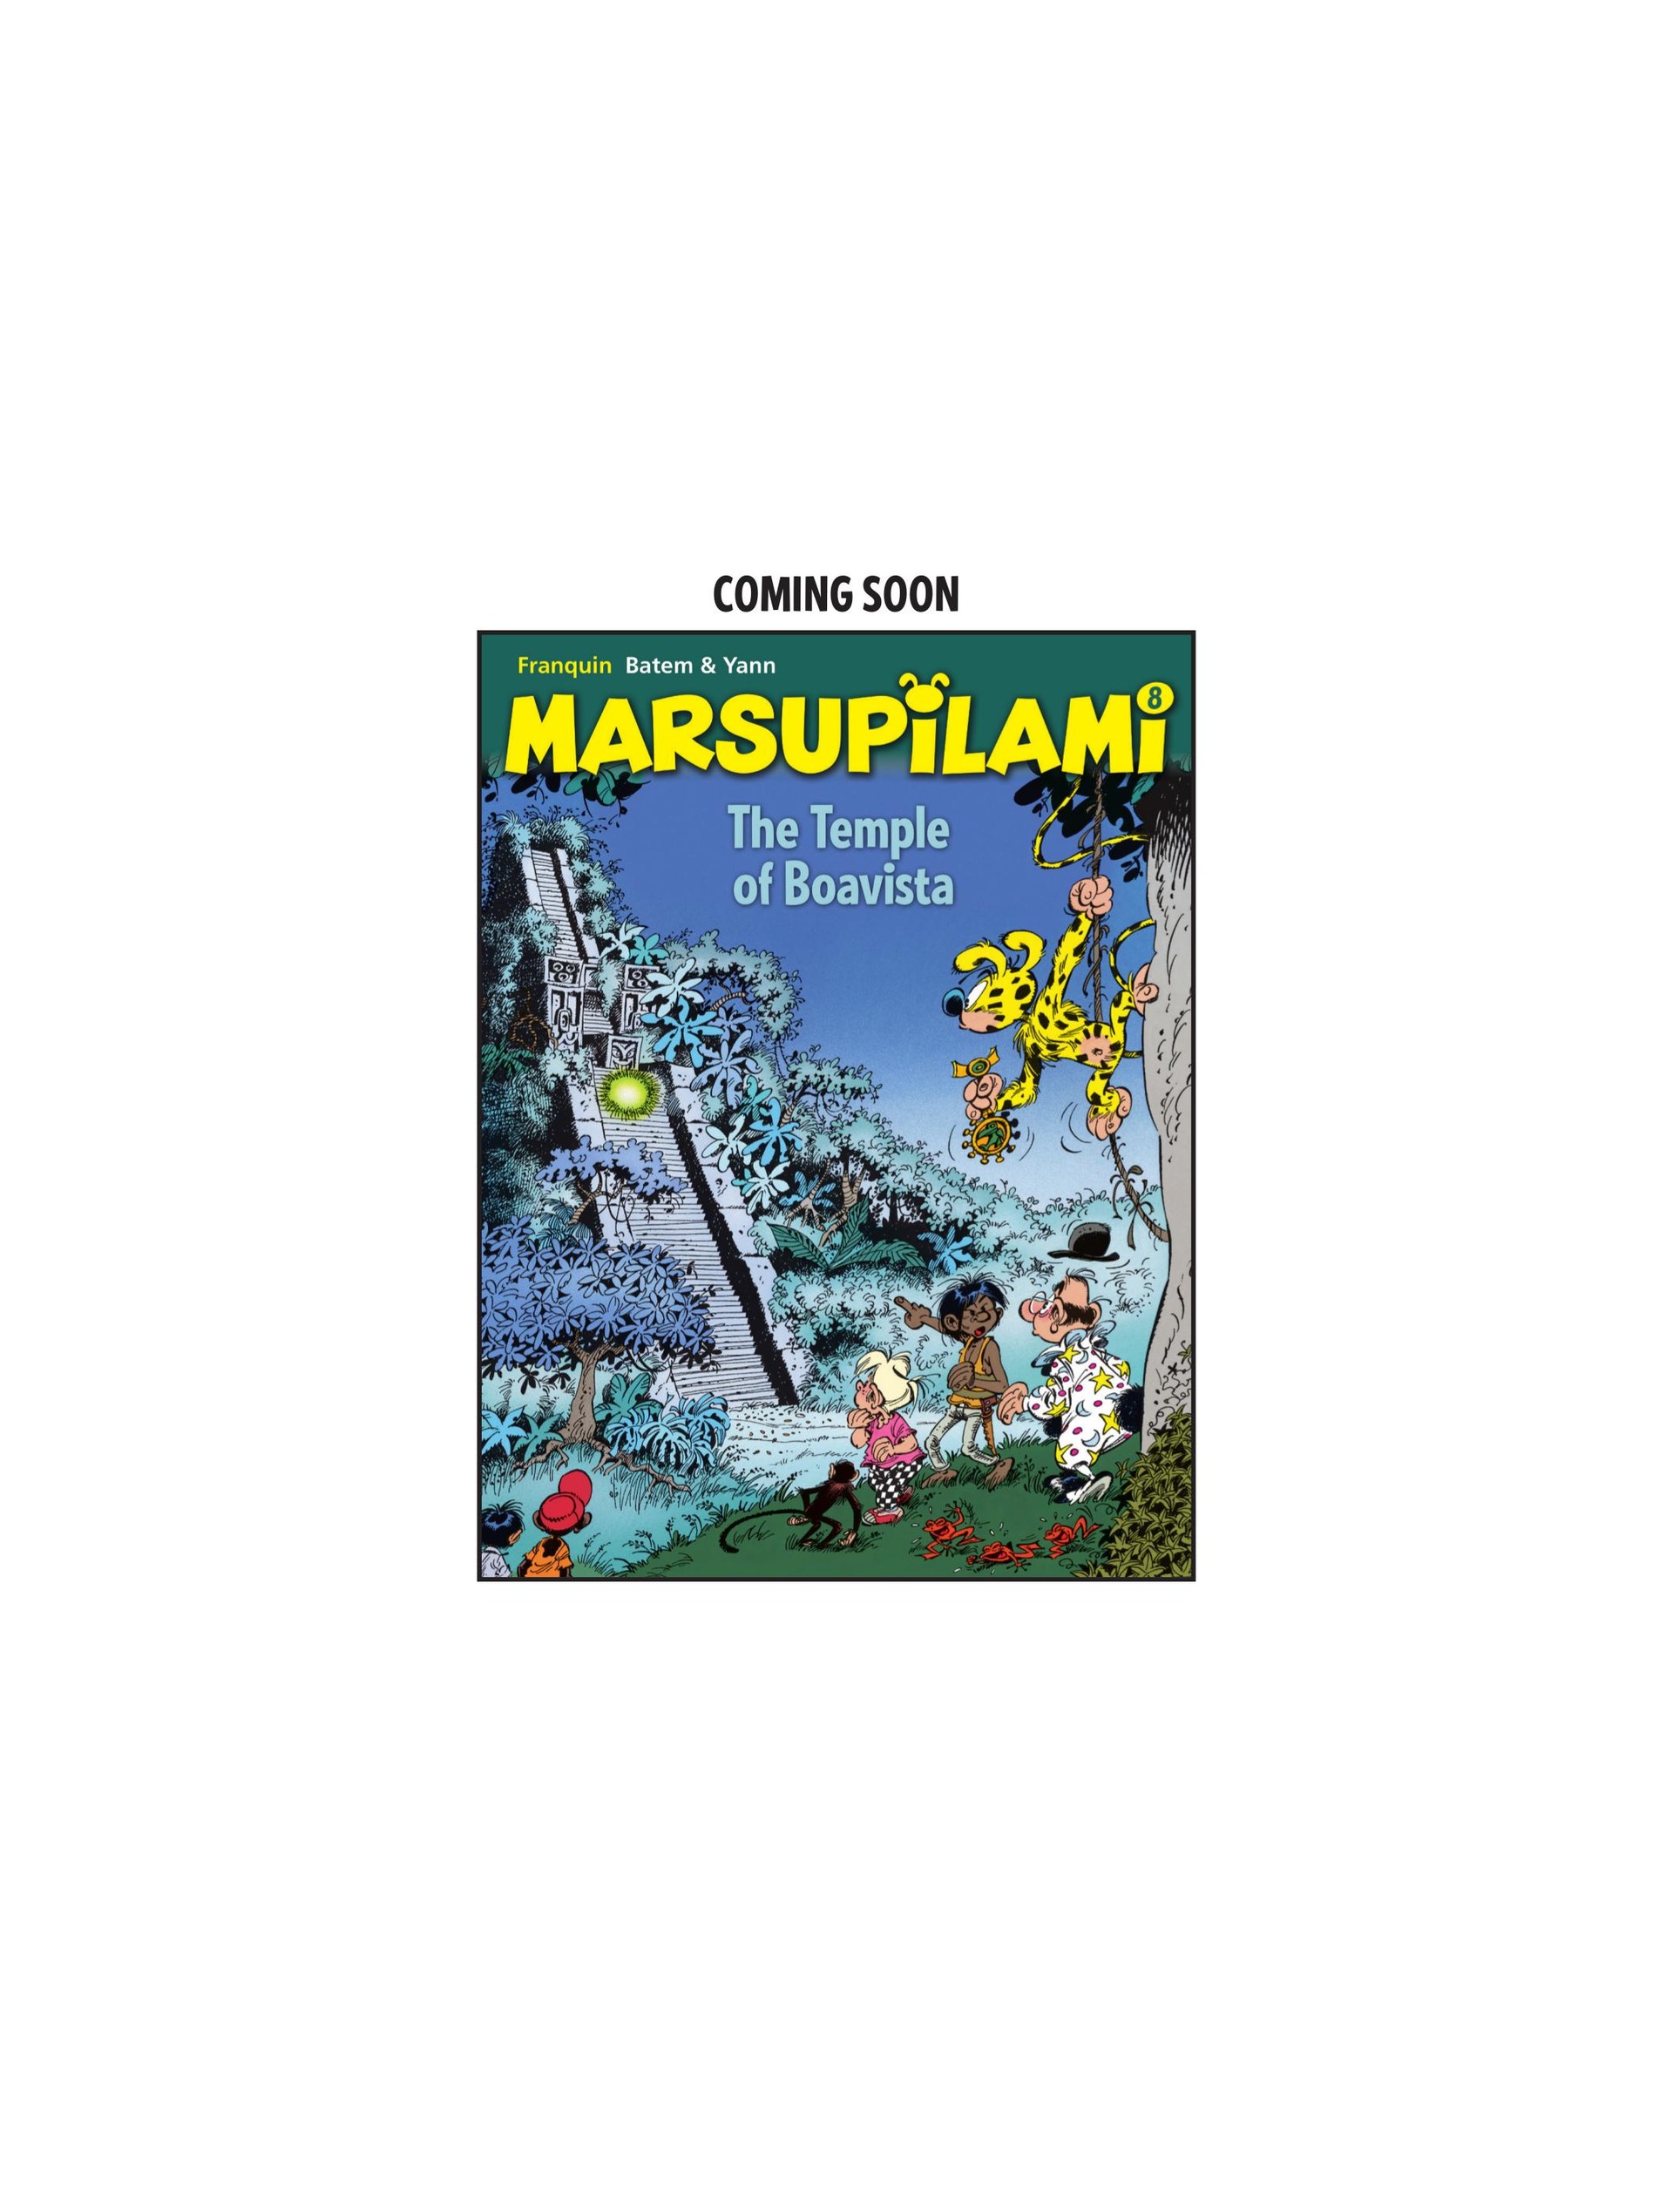 Read online Marsupilami comic -  Issue #7 - 50